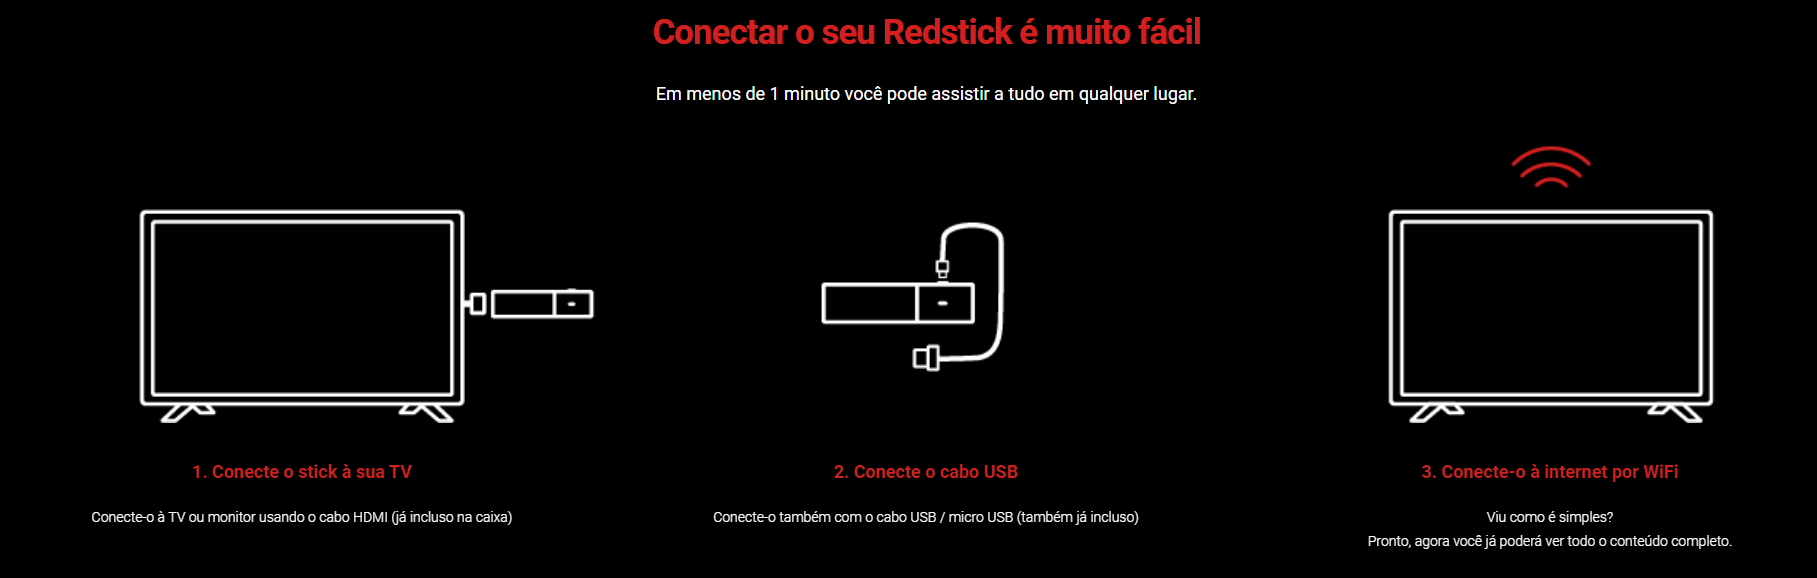 REDSTICK 2 - Open Eletrônicos